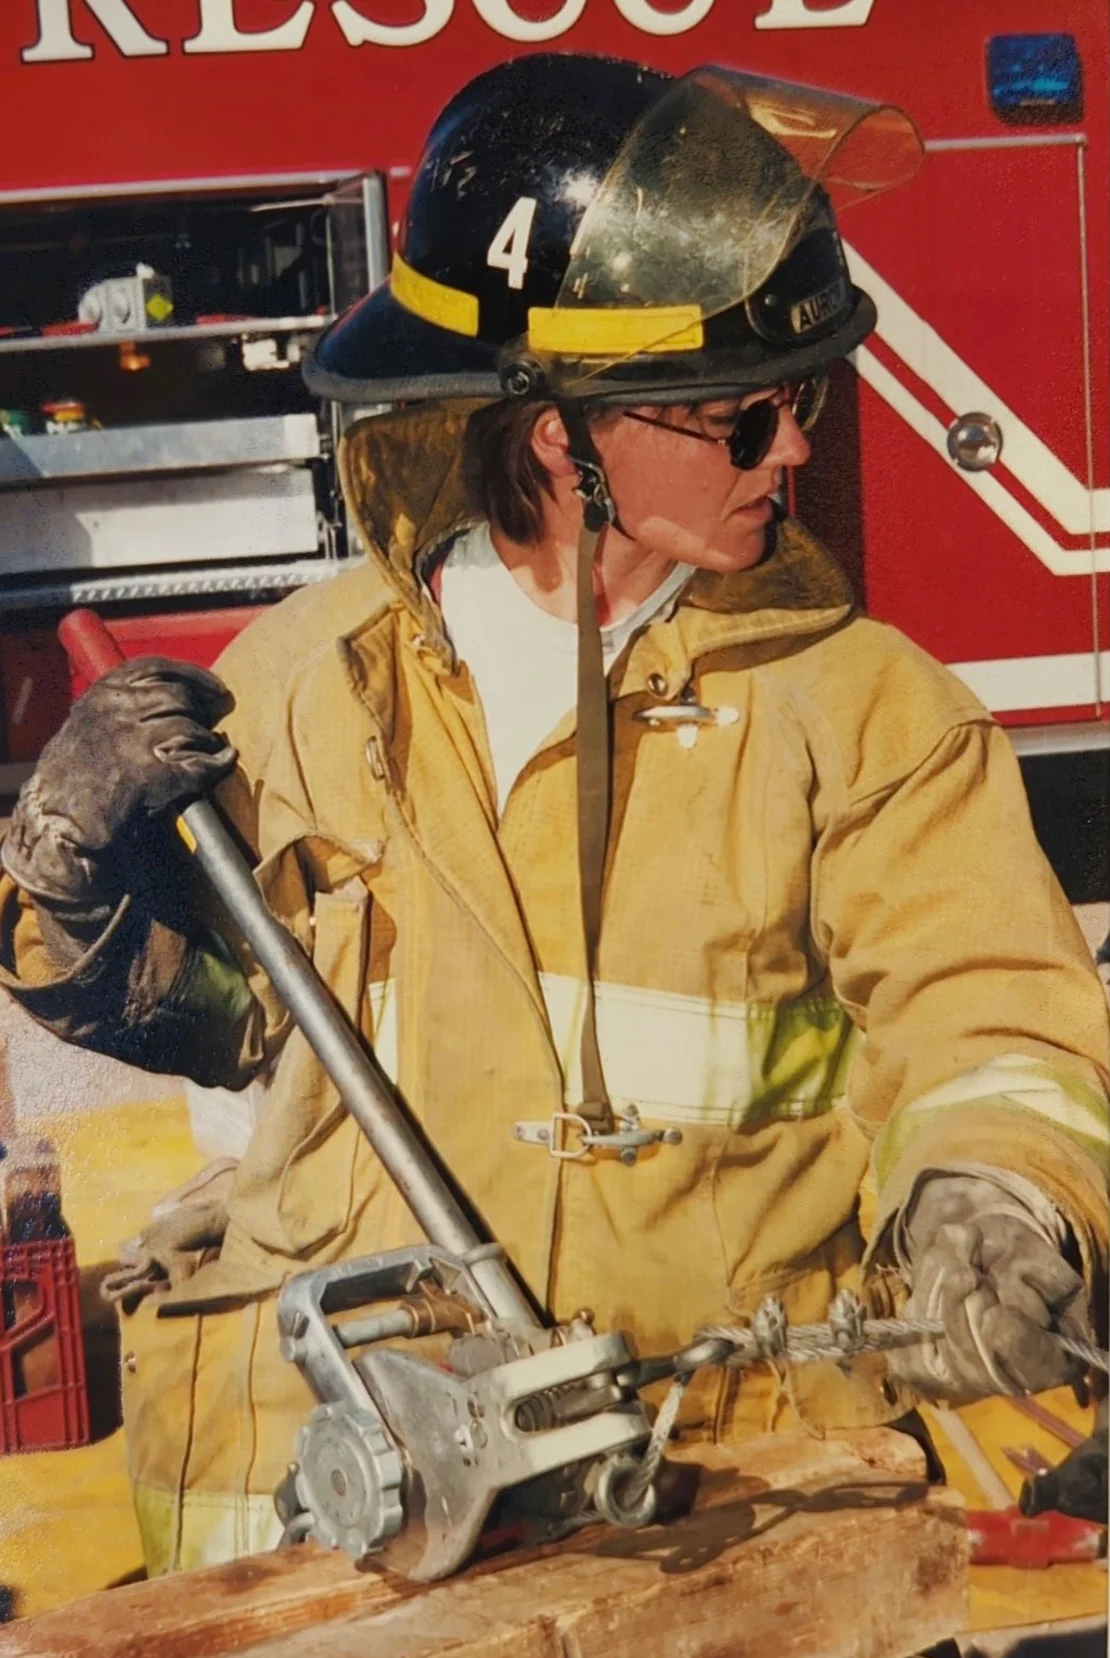 Deanne Criswell merintis jalan dari memadamkan api hingga menjalankan FEMA